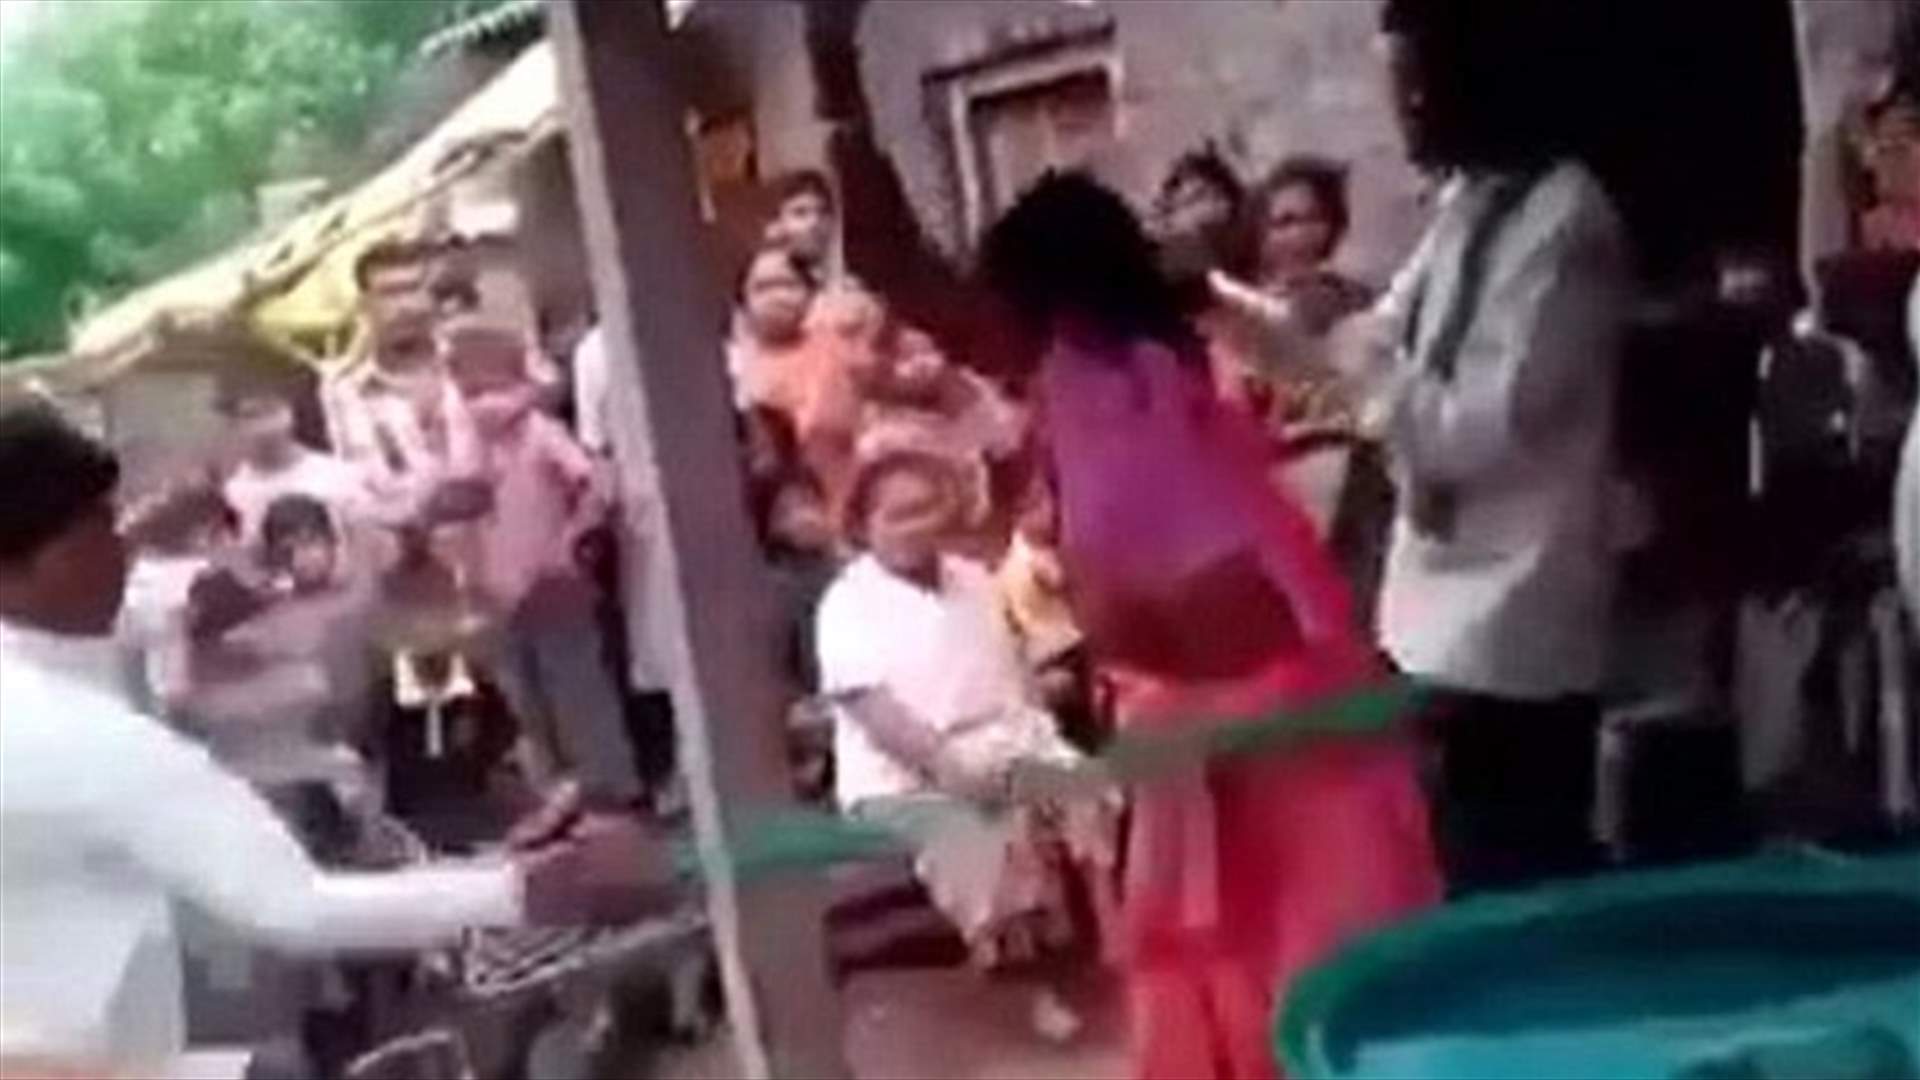 بالفيديو: ضرب زوجته وعشيقها بطريقةٍ وحشيّه بعد اكتشاف خيانتها له